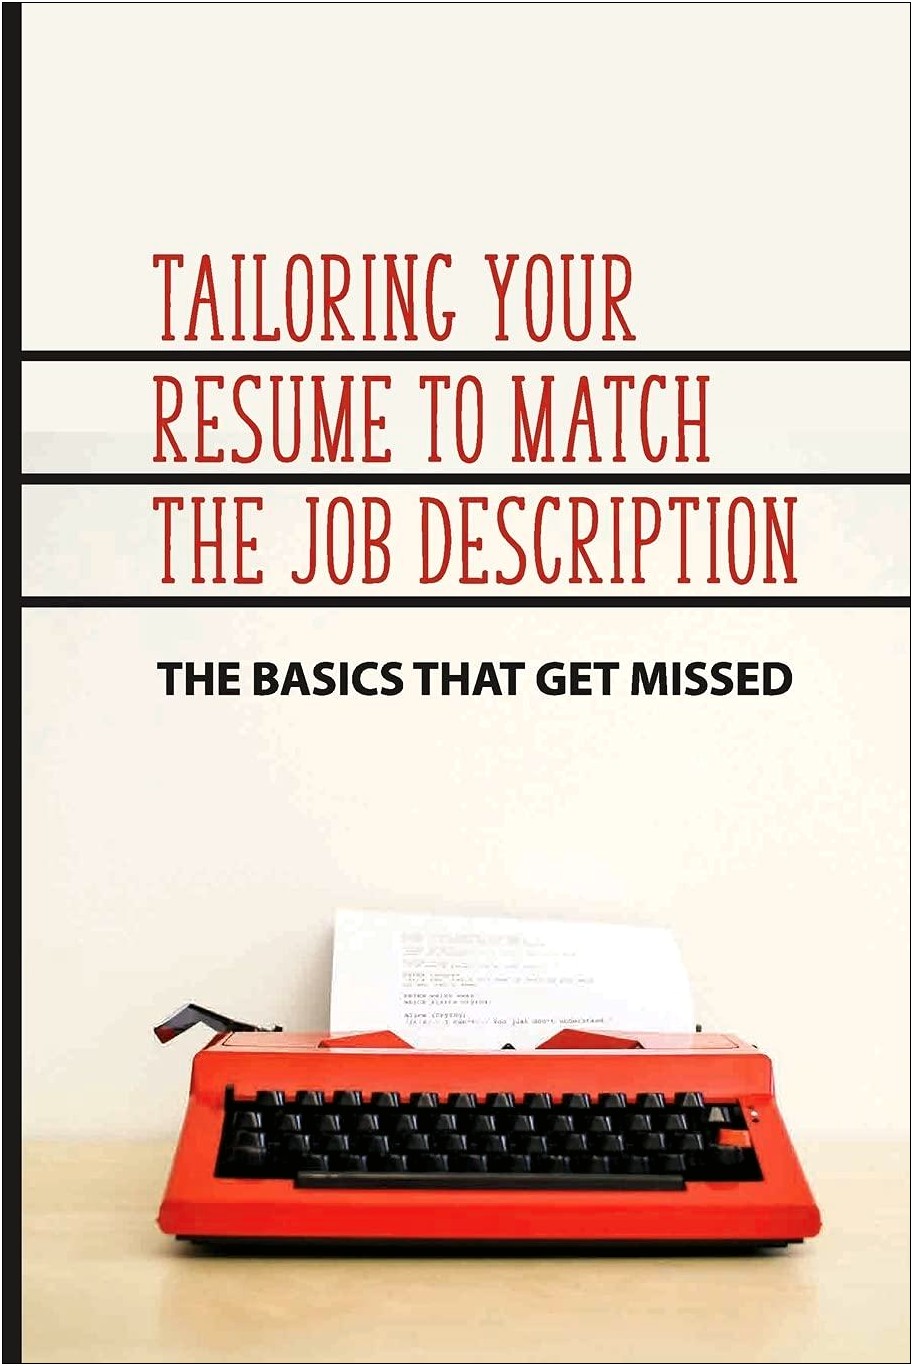 Should Your Resume Match The Job Description